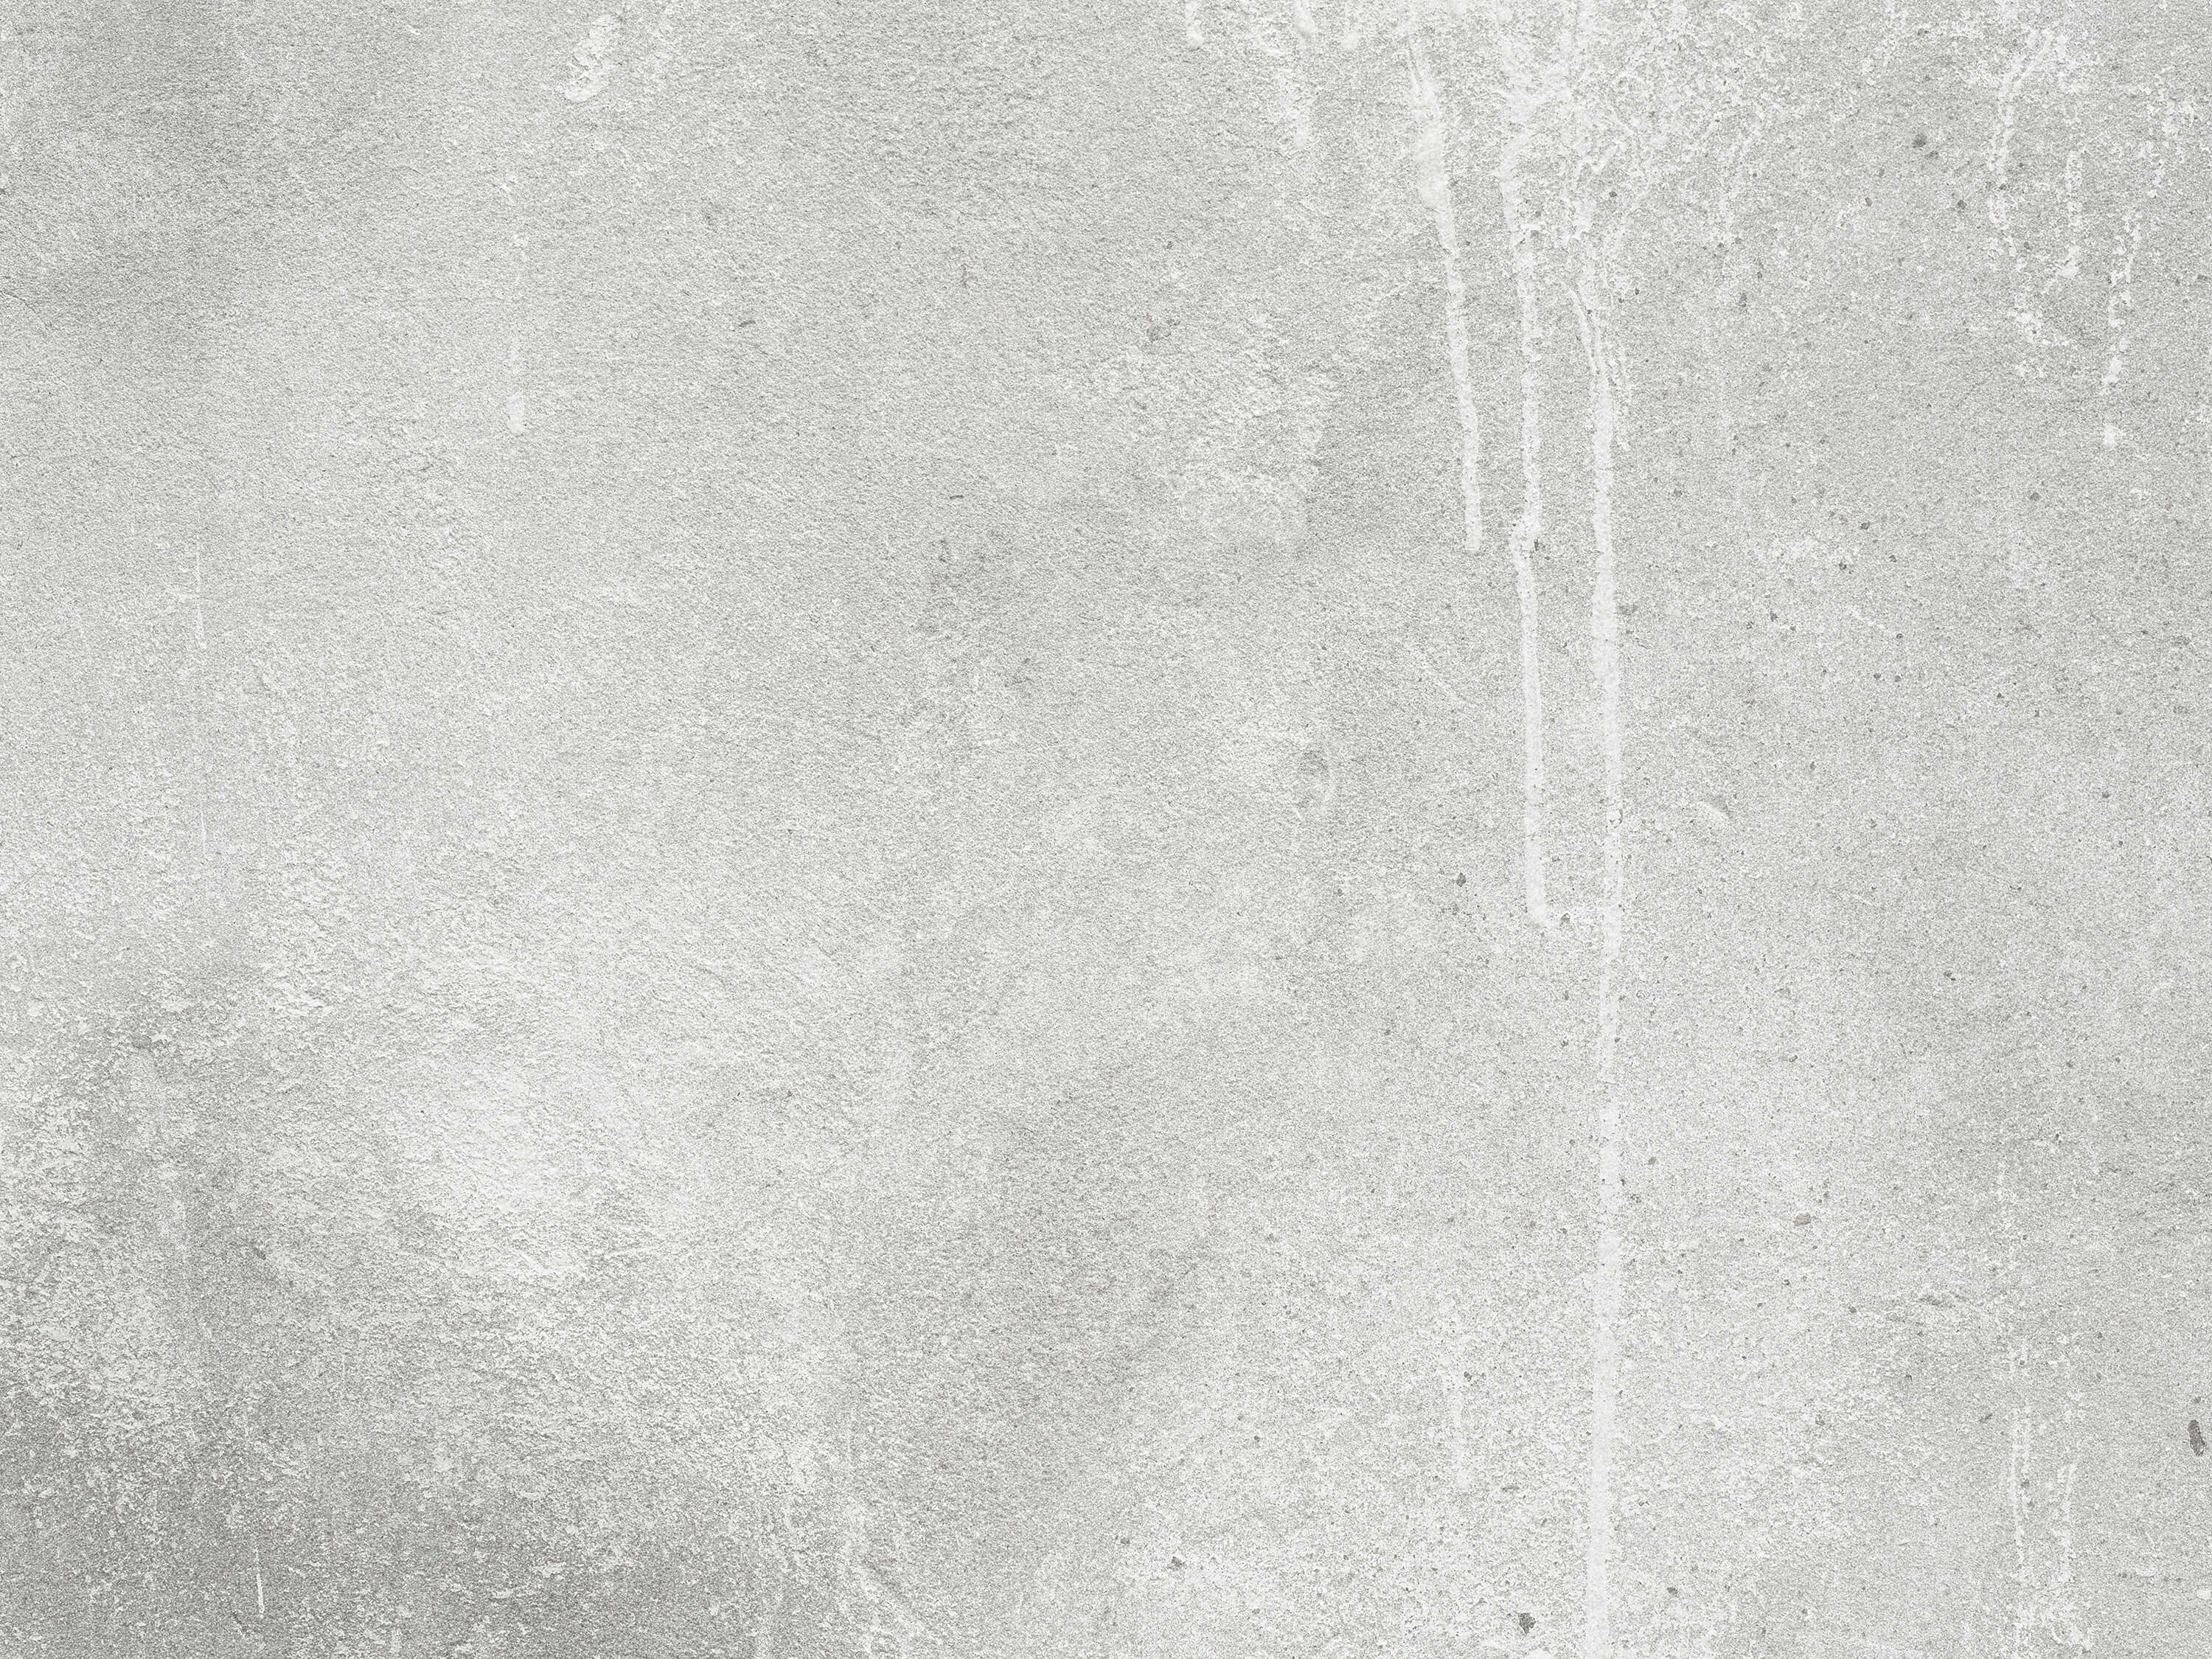 Concrete look wallpaper - Concrete texture - Office